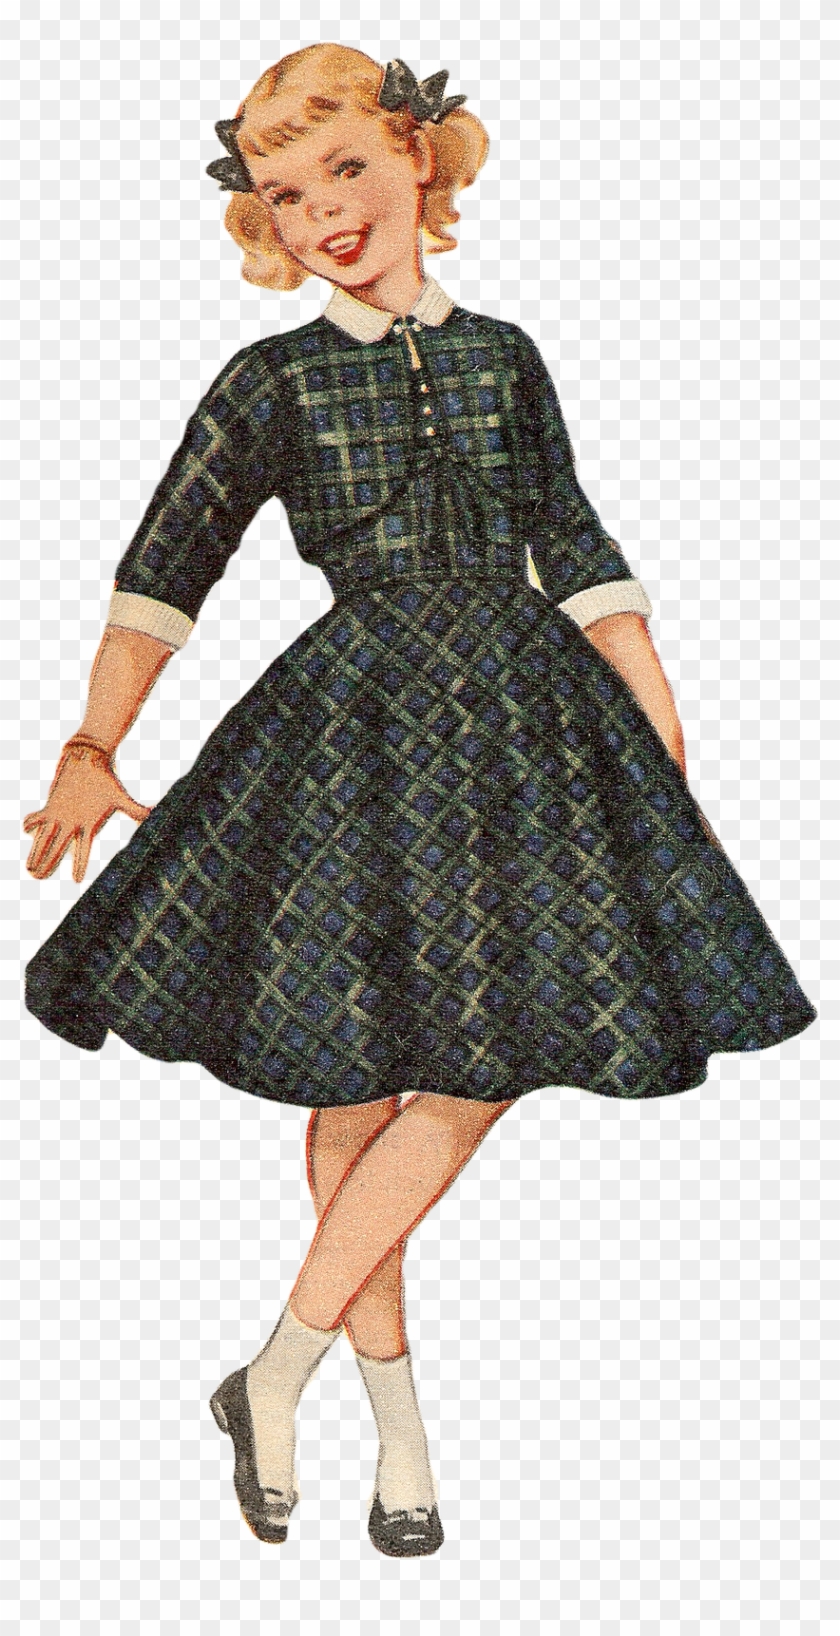 Free Vintage Image 1955 Girl 842×1,600 Pixels Vintage - Vintage Girl Png Clipart #1459612